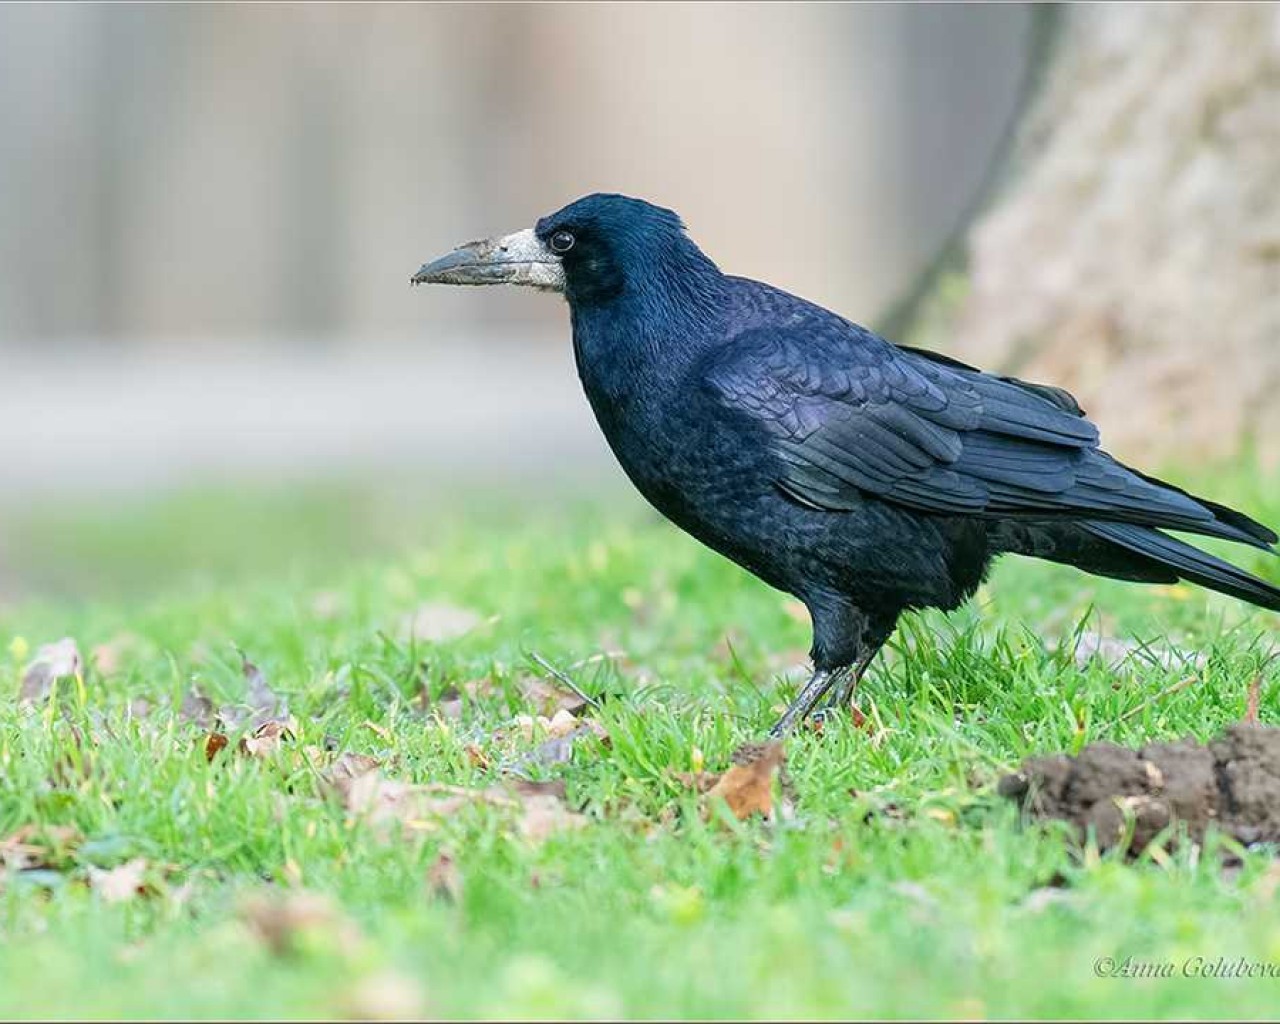 Повседневная жизнь и повадки грача - особенности поведения этой умной птицы